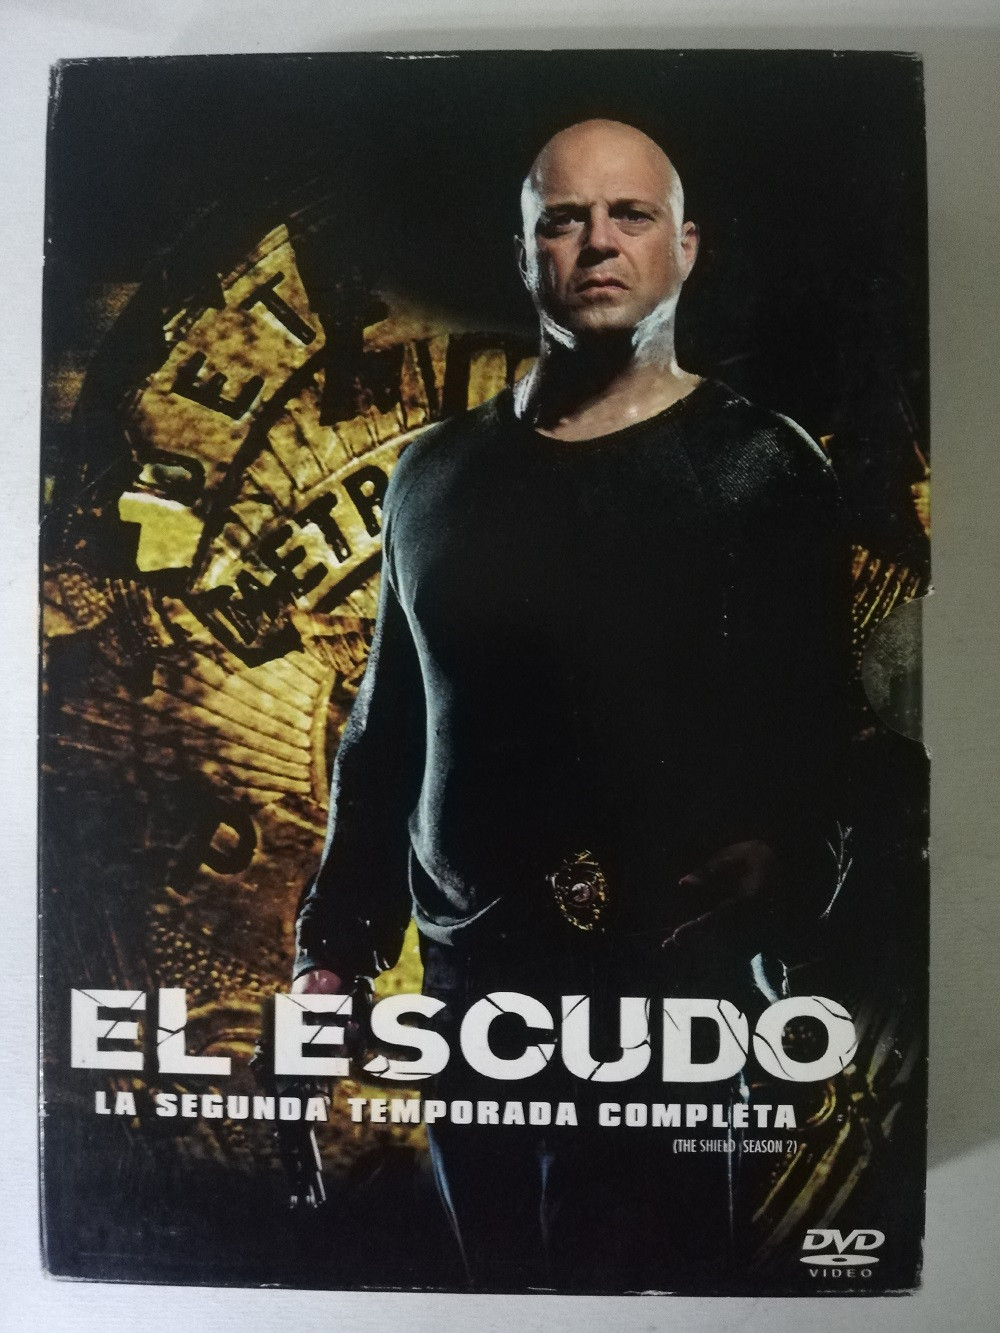 Imagen DVD SERIE EL ESCUDO - LA SEGUNDA TEMPORADA COMPLETA 1